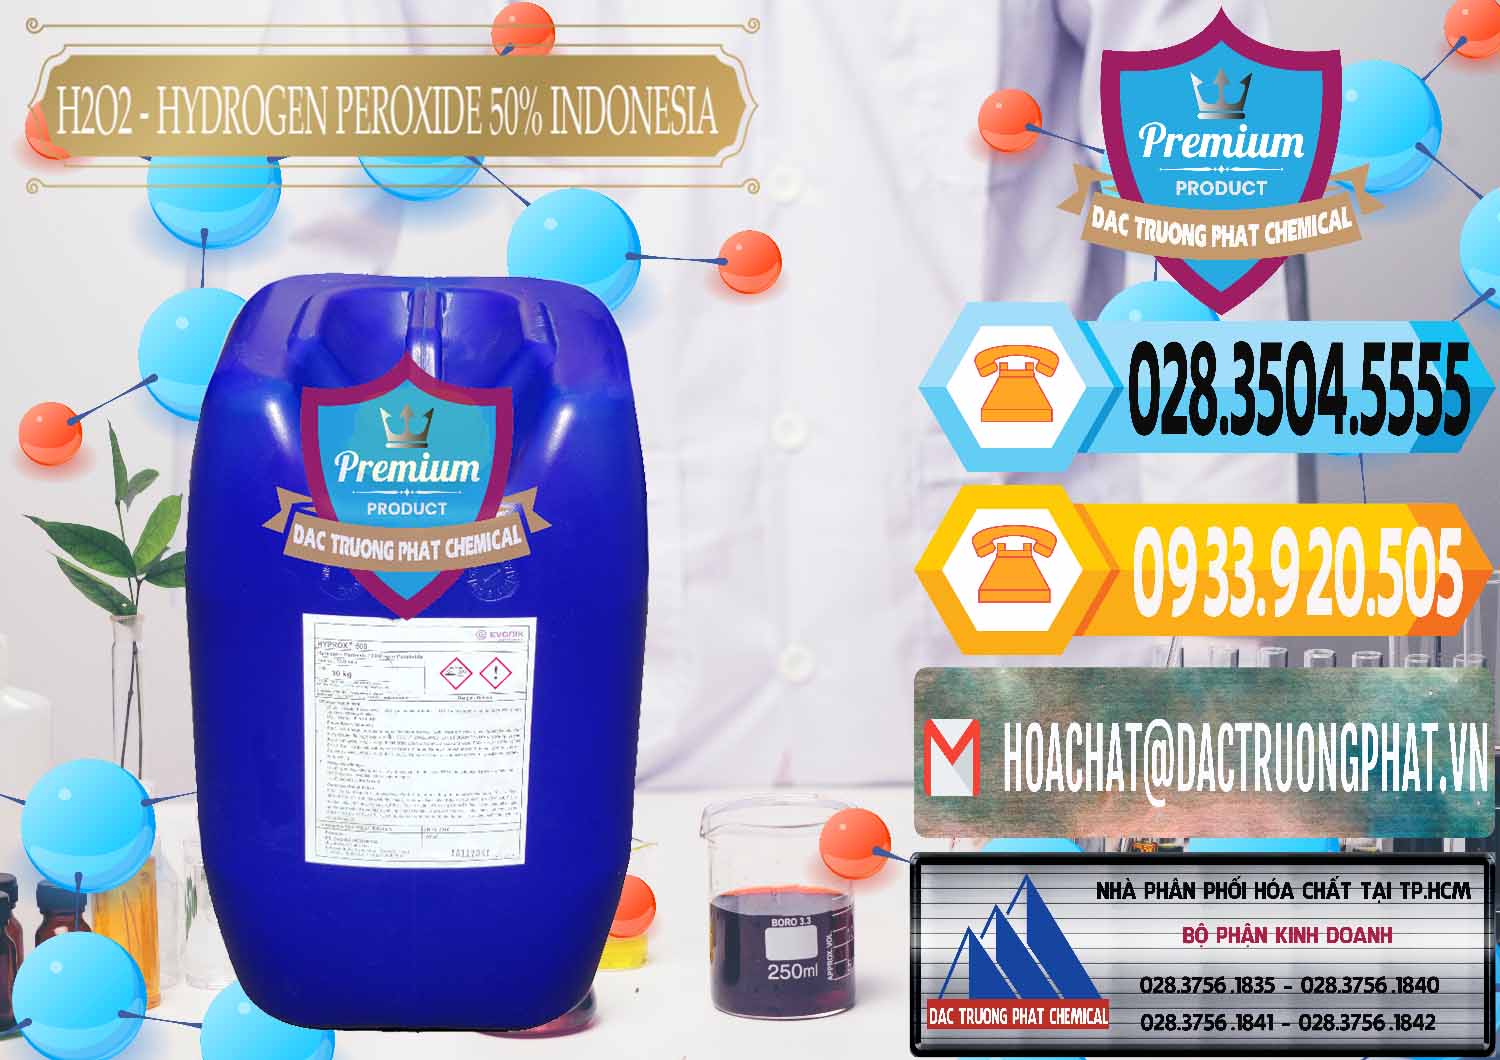 Bán - cung ứng H2O2 - Hydrogen Peroxide 50% Evonik Indonesia - 0070 - Công ty chuyên nhập khẩu & phân phối hóa chất tại TP.HCM - hoachattayrua.net